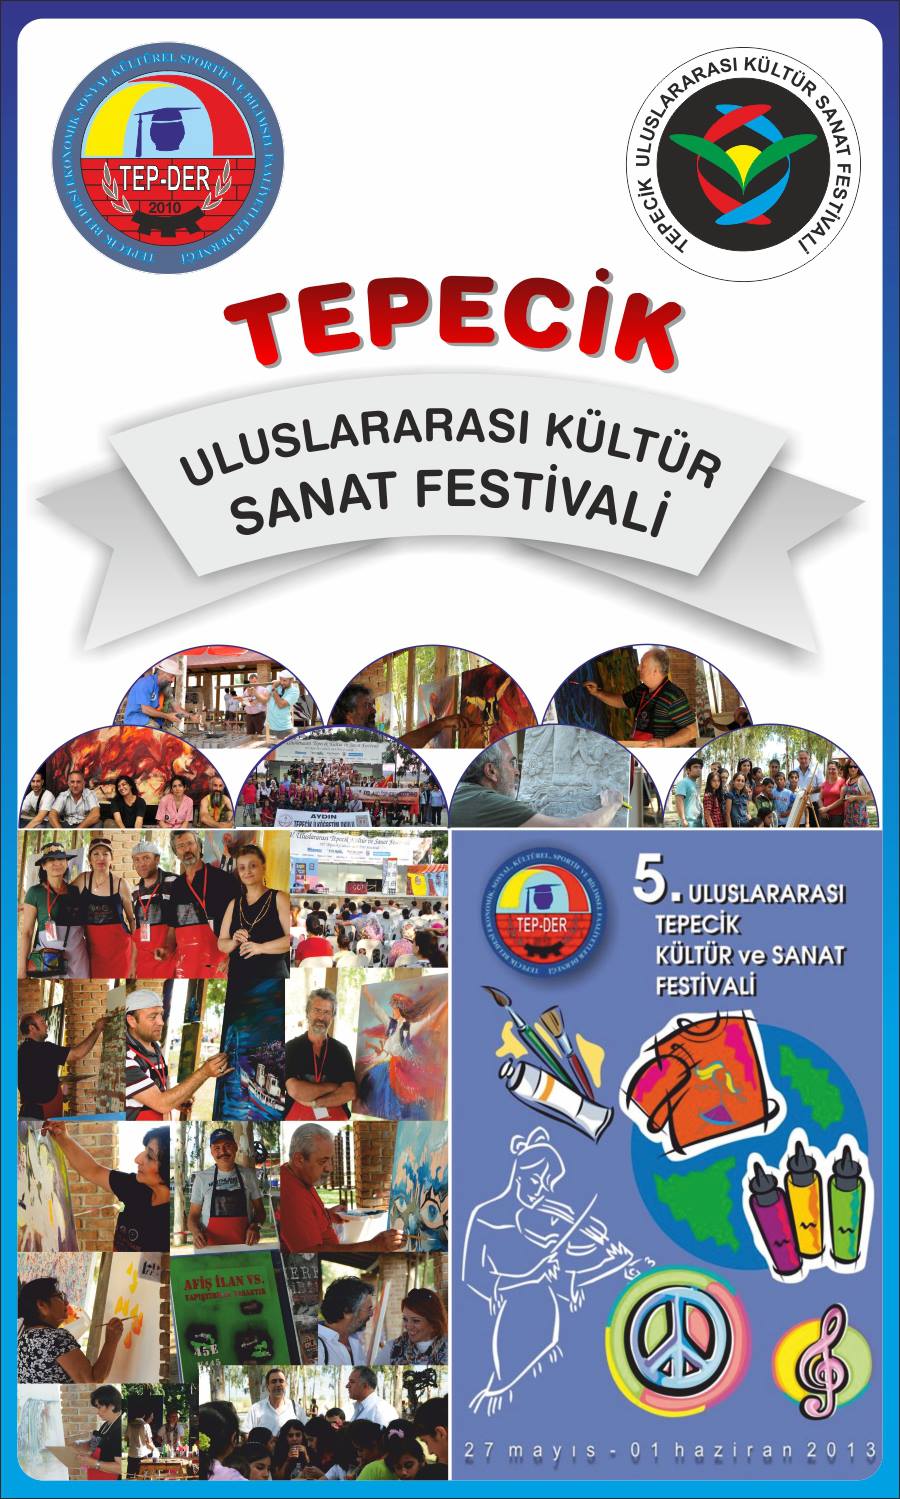 Tepecik 5.uluslararası Kültür Sanat Festivali başlıyor...